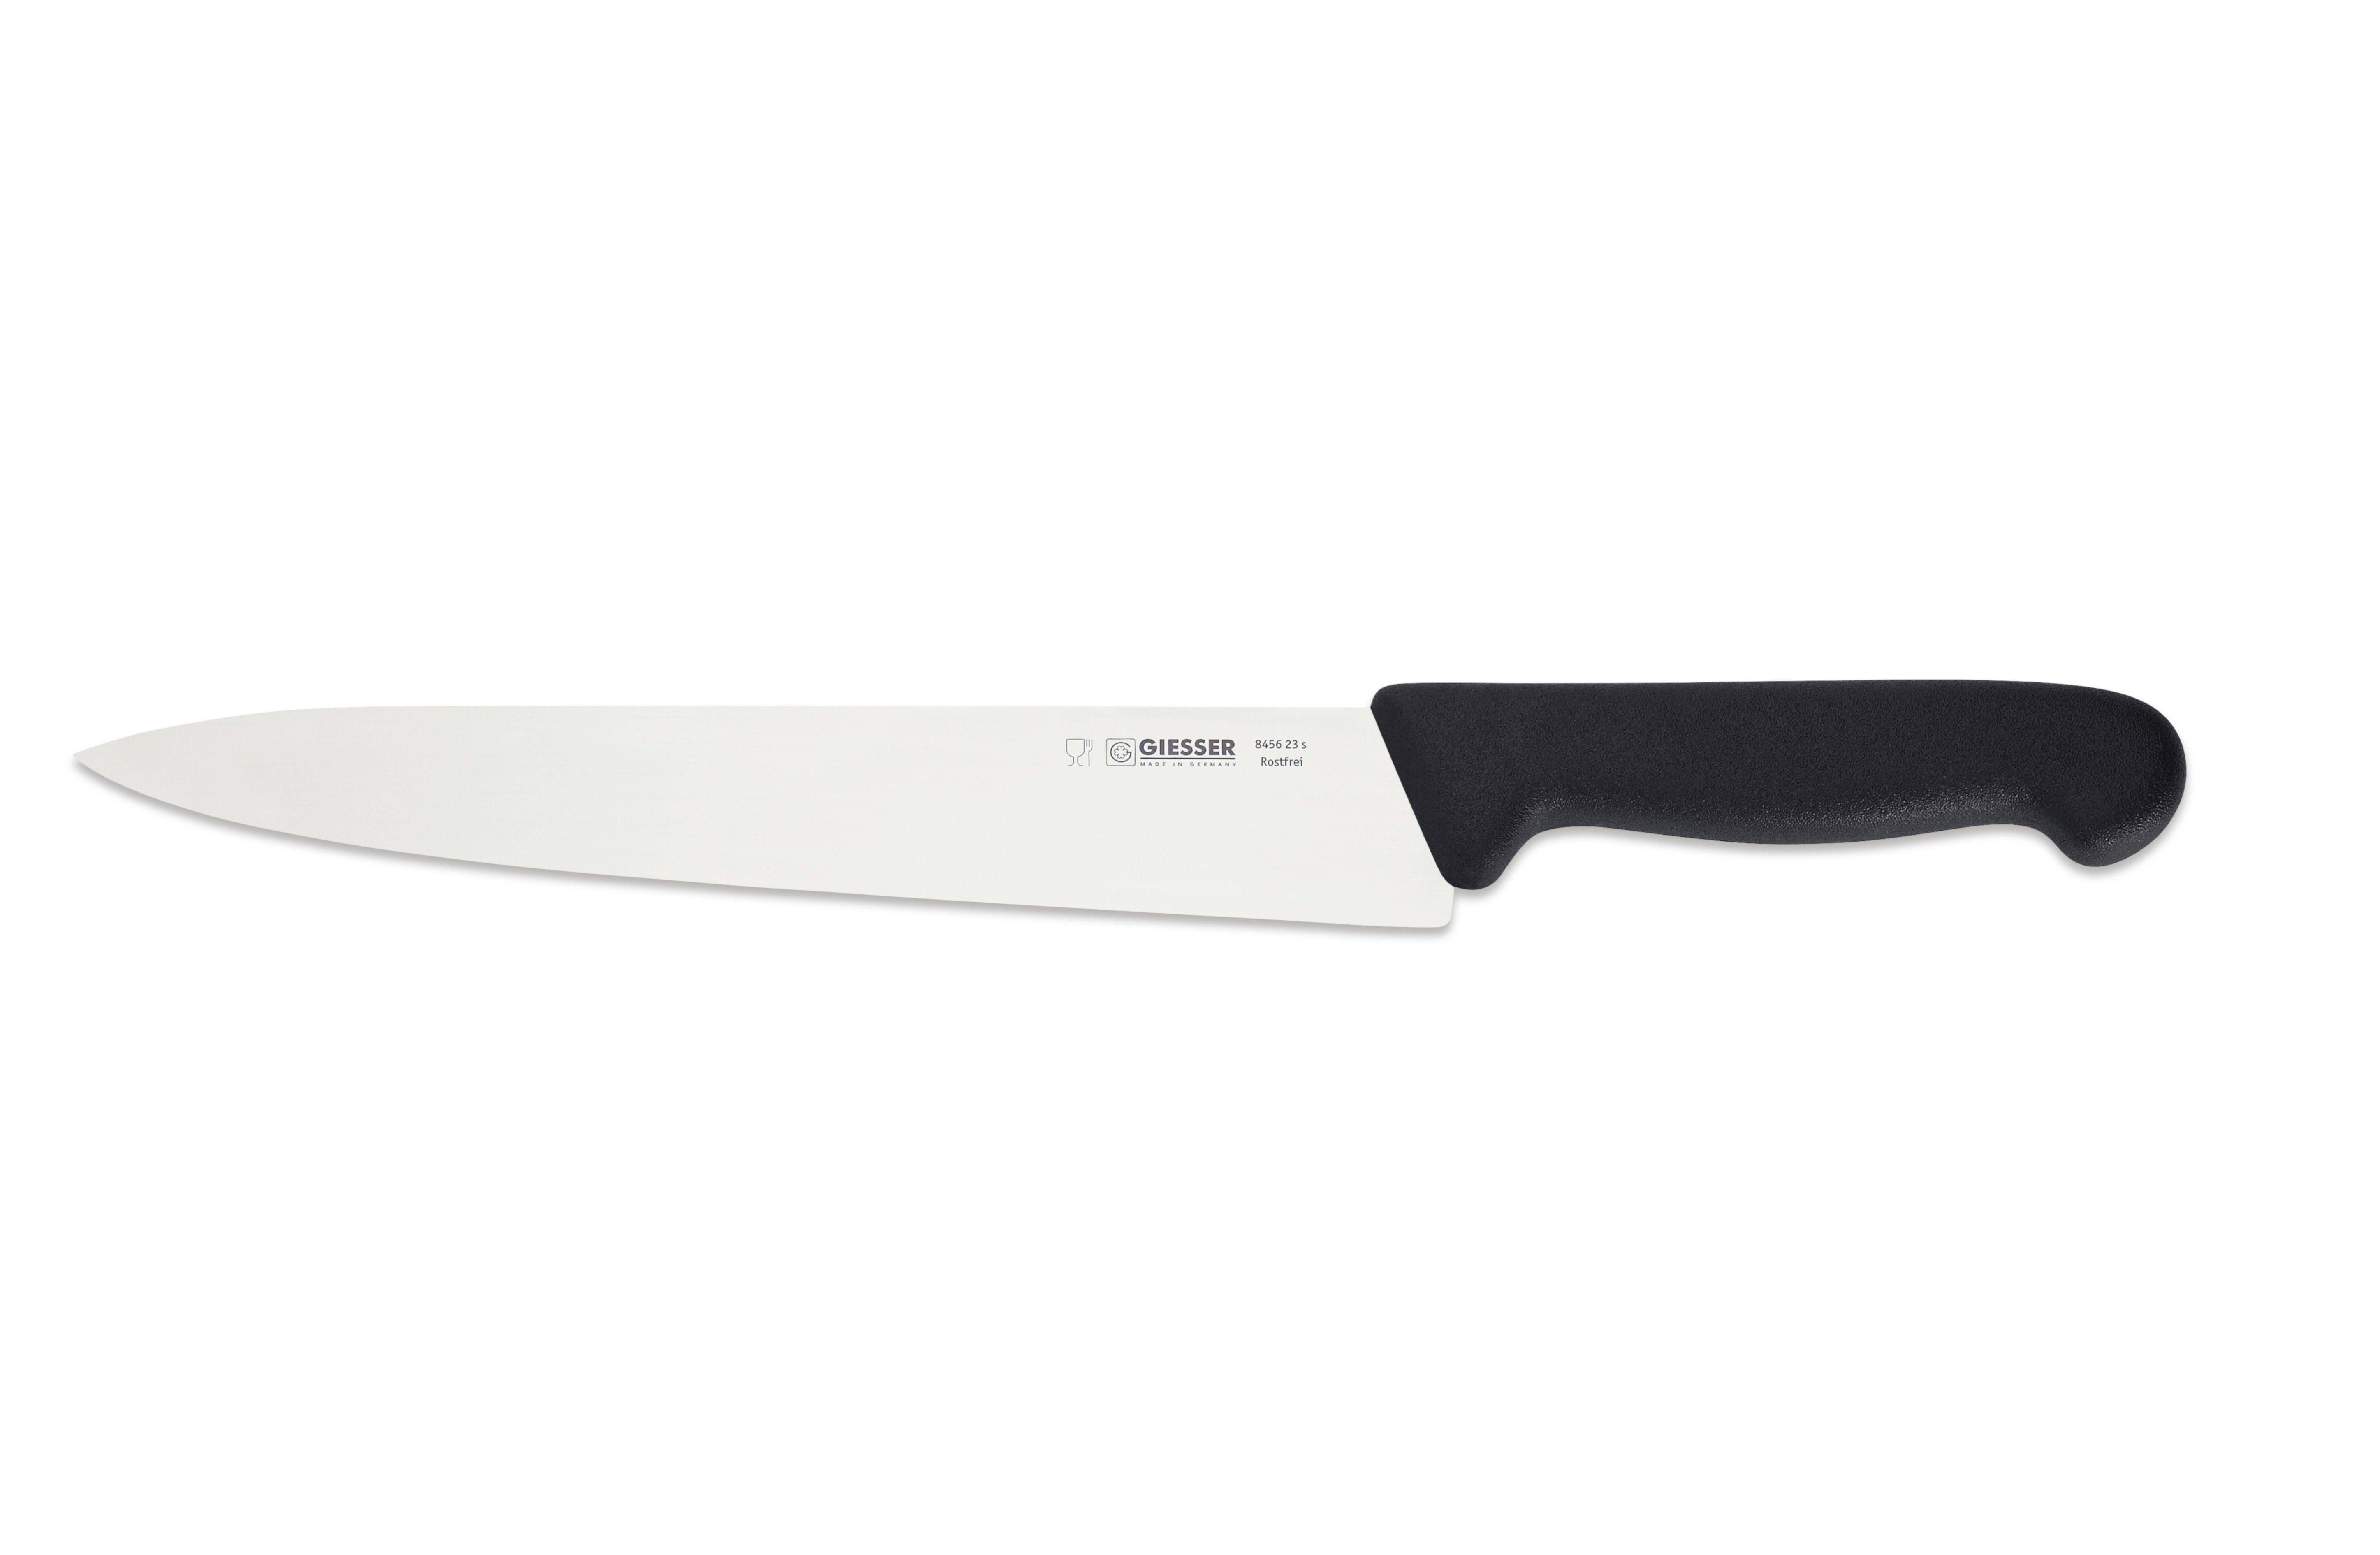 Giesser Messer Kochmesser Küchenmesser 8456, schmale, mittelspitze Klinge, scharf Handabzug, Ideal für jede Küche hellgrün